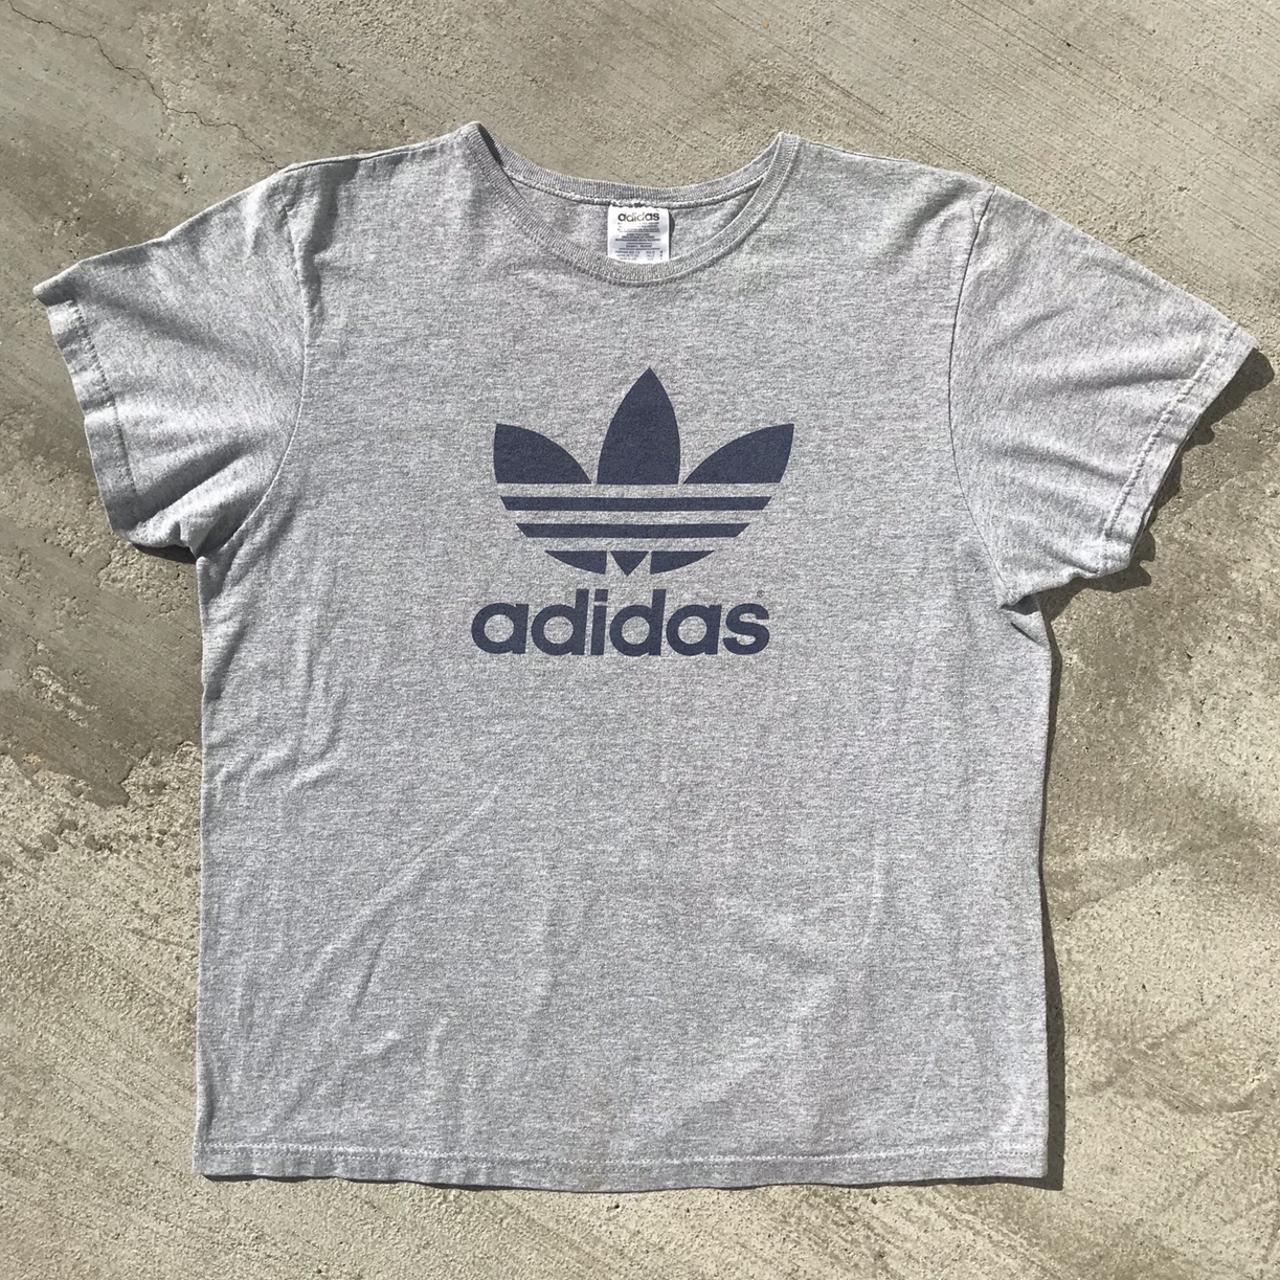 Adidas Women's T-shirt